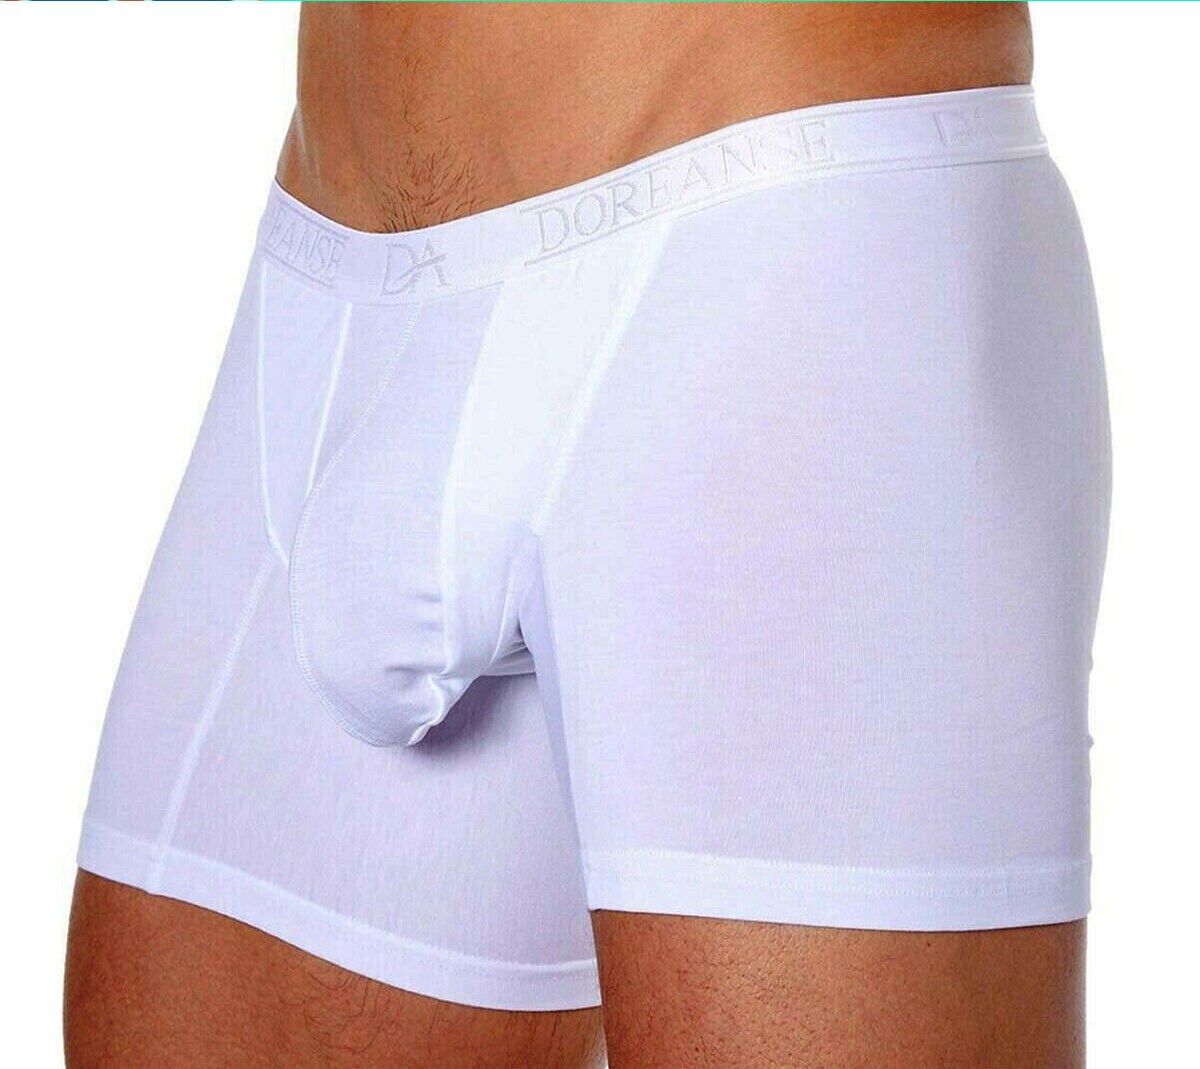 Panteasy Men's See through Mesh Frenchie Brief Underwear